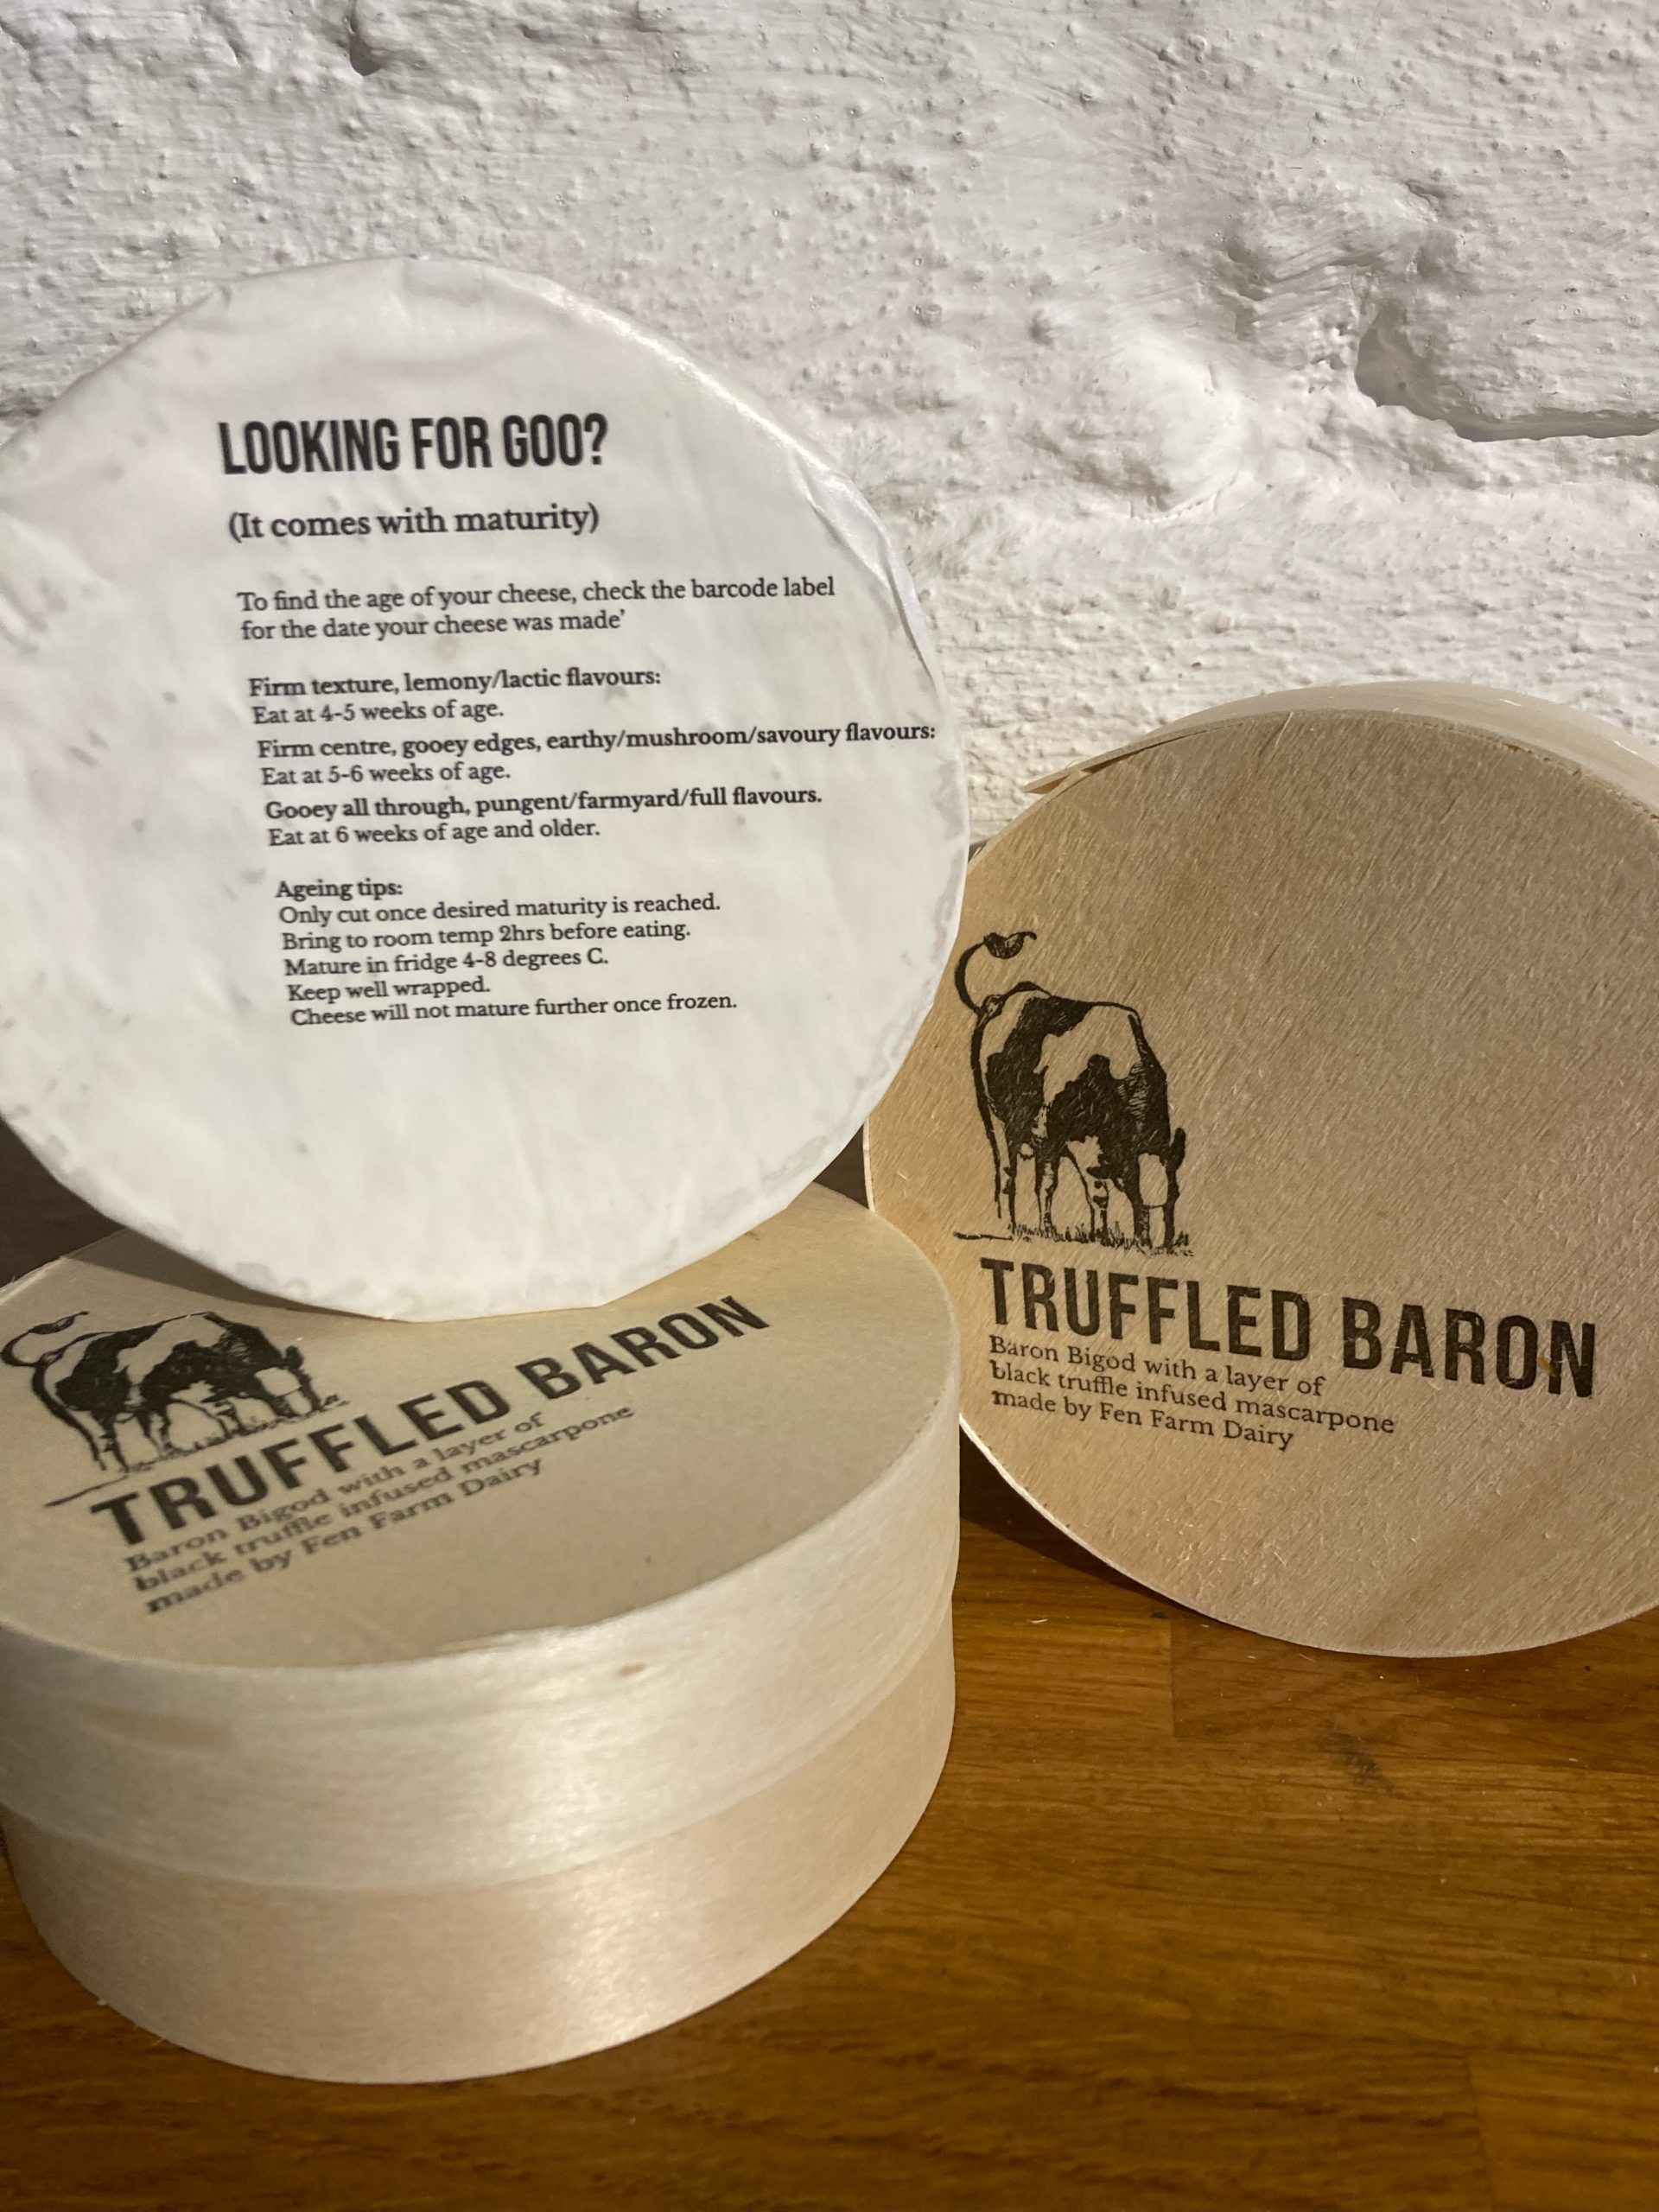 Three round boxes of baby truffle baron bigod piled up